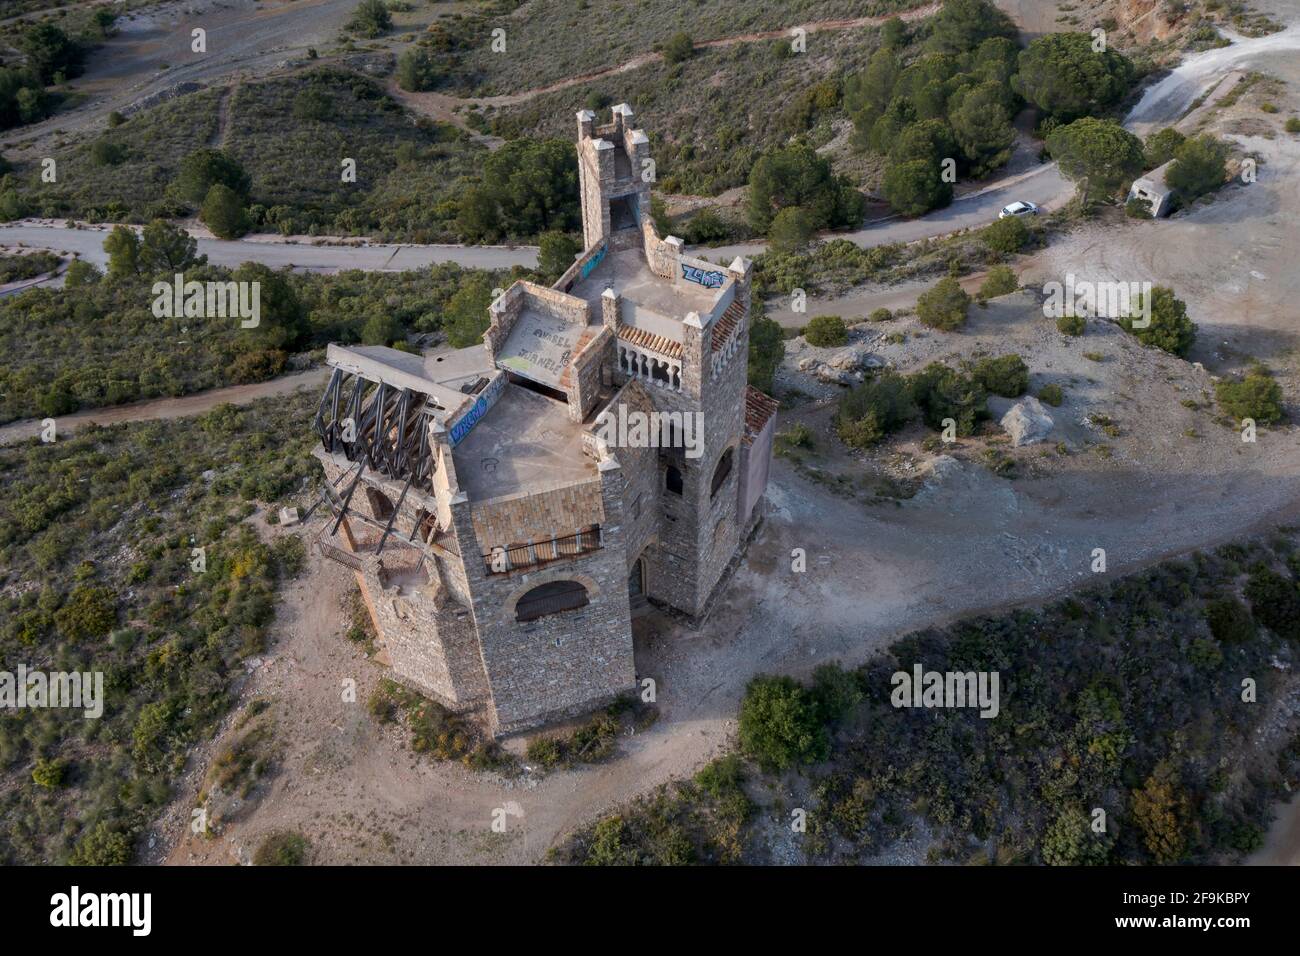 La Mota Castle in Alhaurin el Grande in the province of Malaga, Spain. Stock Photo